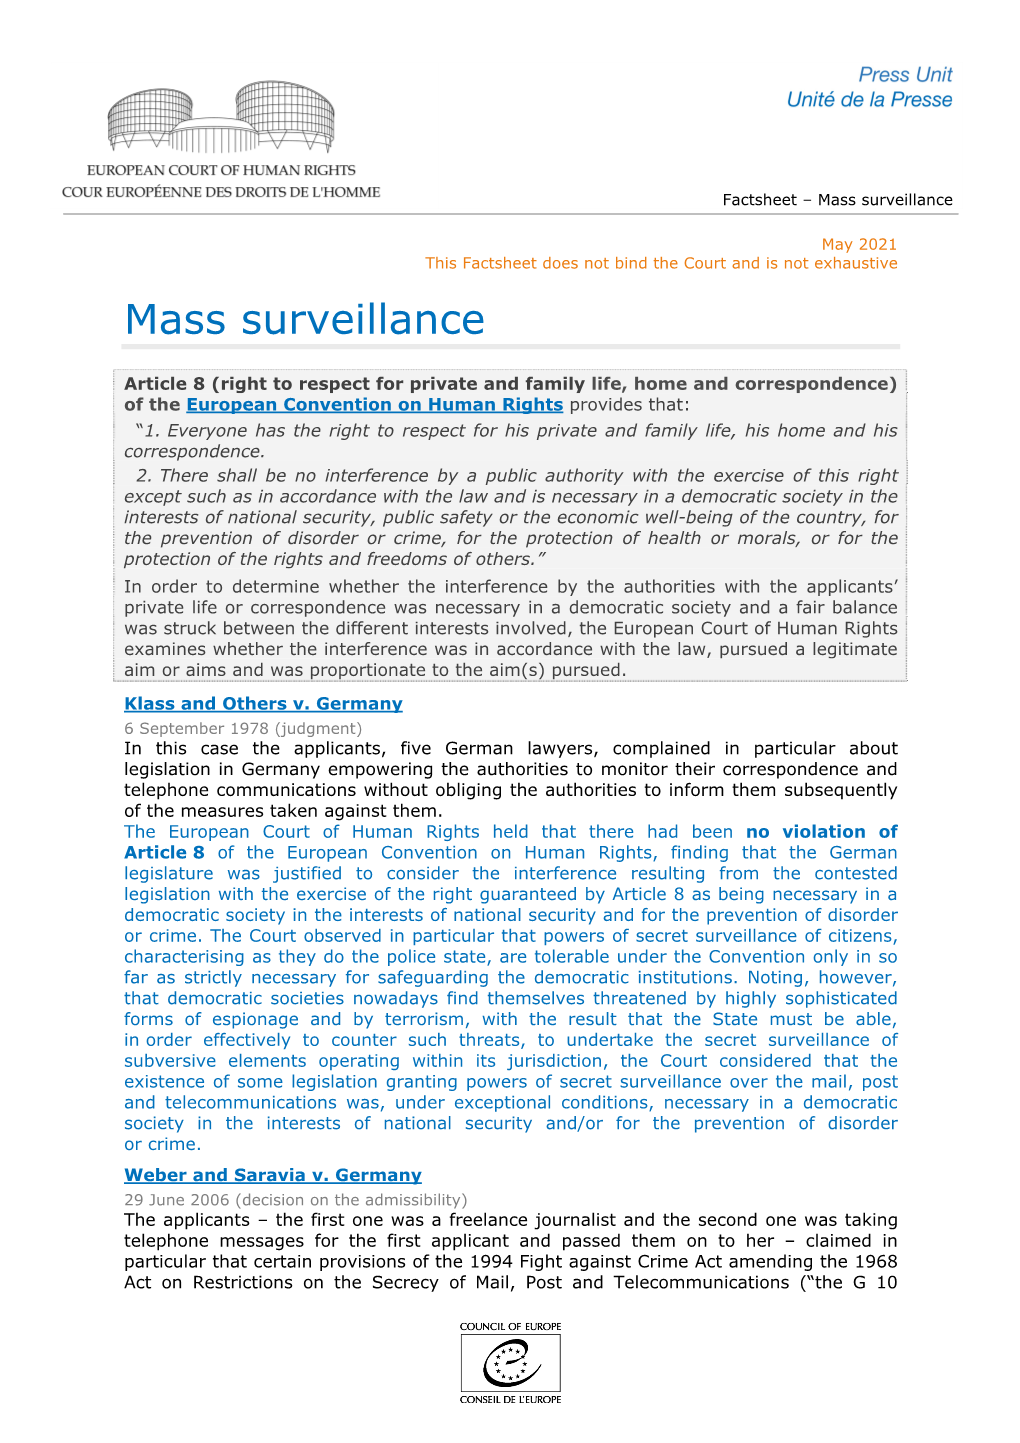 Factsheet – Mass Surveillance